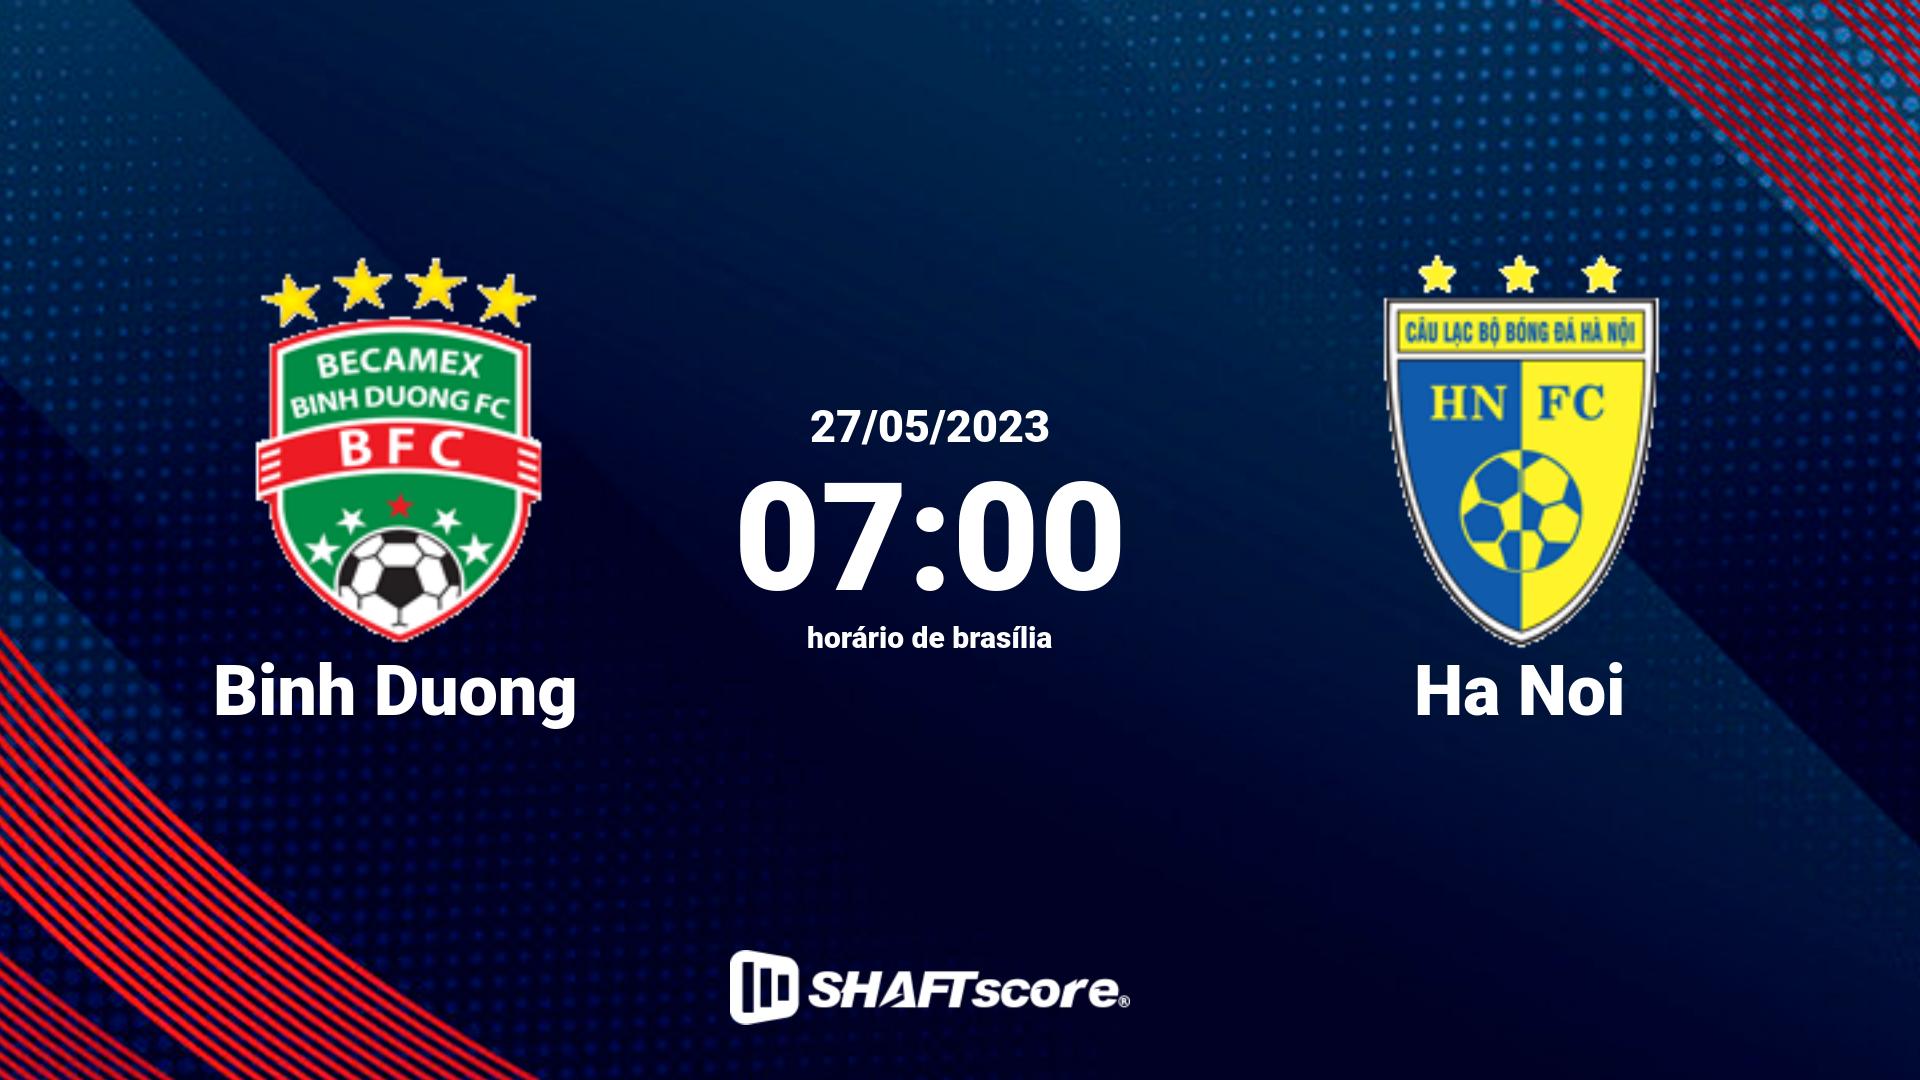 Estatísticas do jogo Binh Duong vs Ha Noi 27.05 07:00